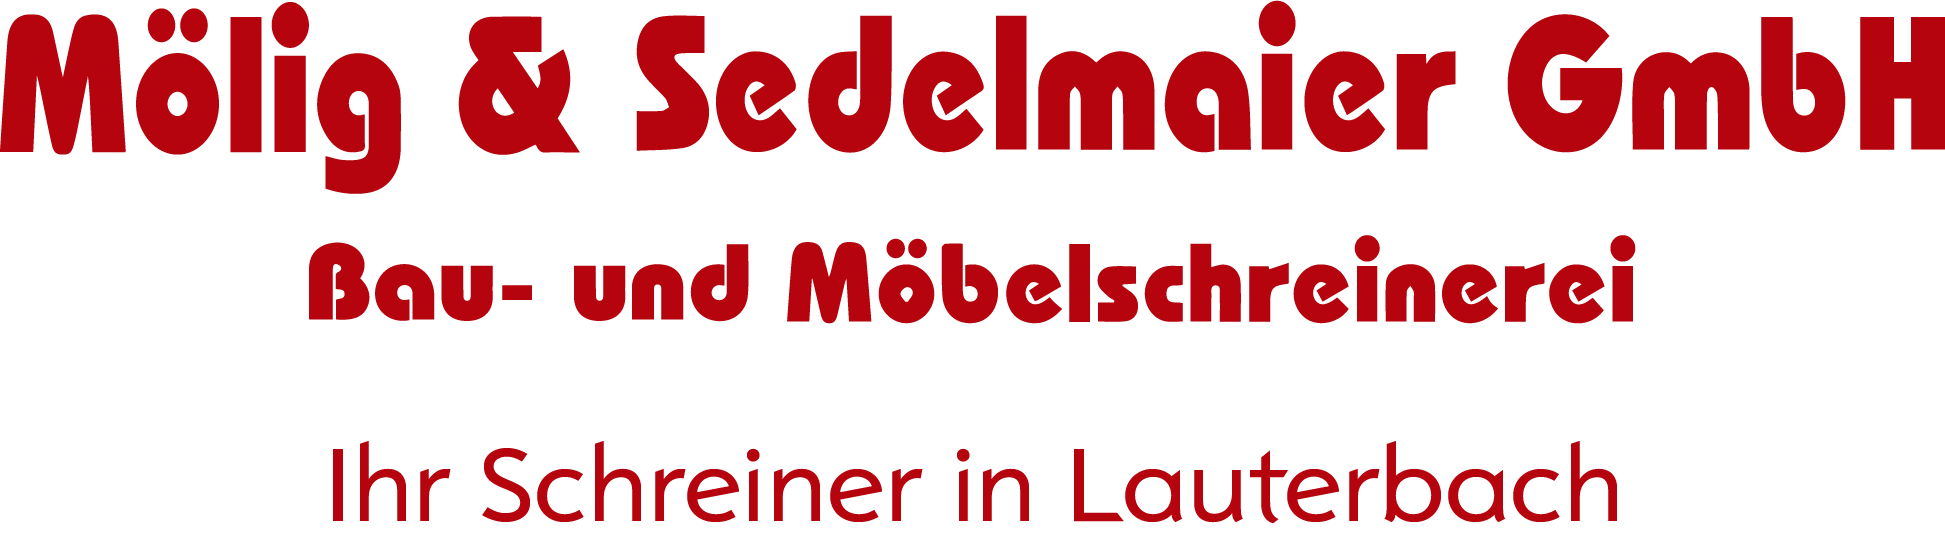 Mölig und Sedelmaier GmbH Bau- und Möbelschreinerei